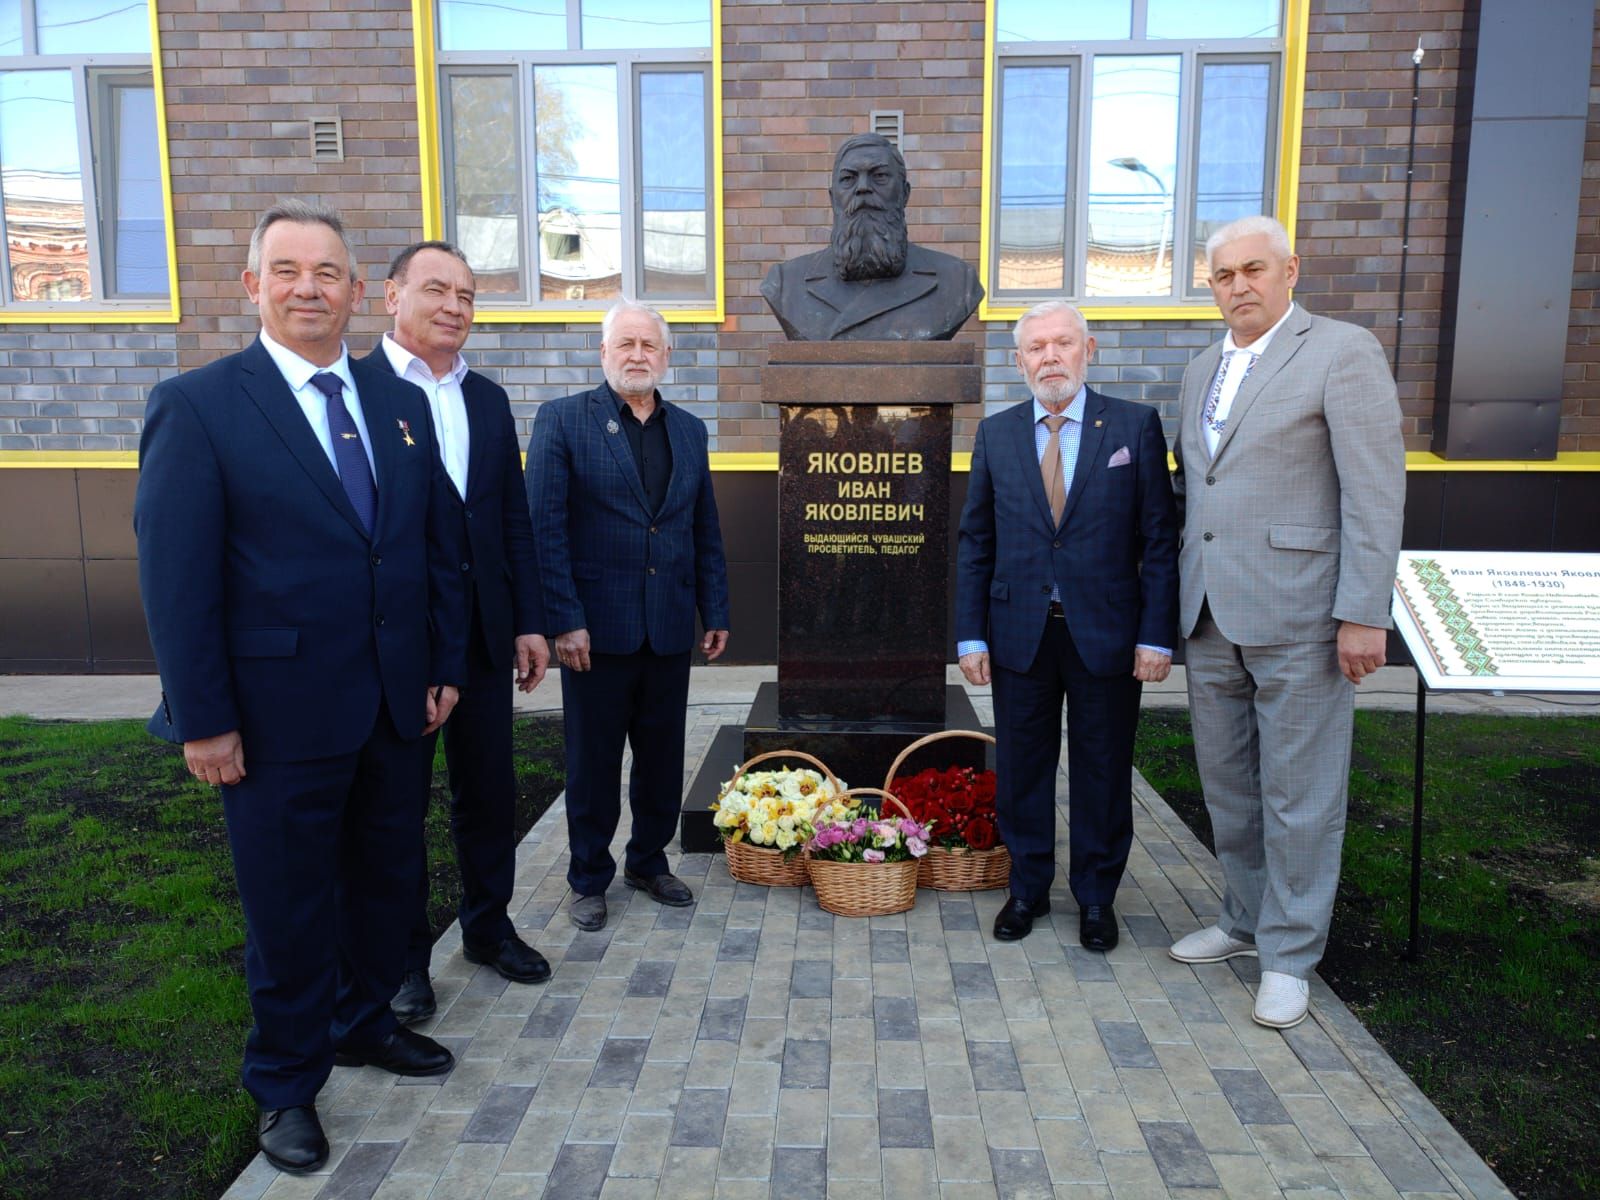 Сегодня в Буинске открыли памятник просветителю Ивану Яковлеву